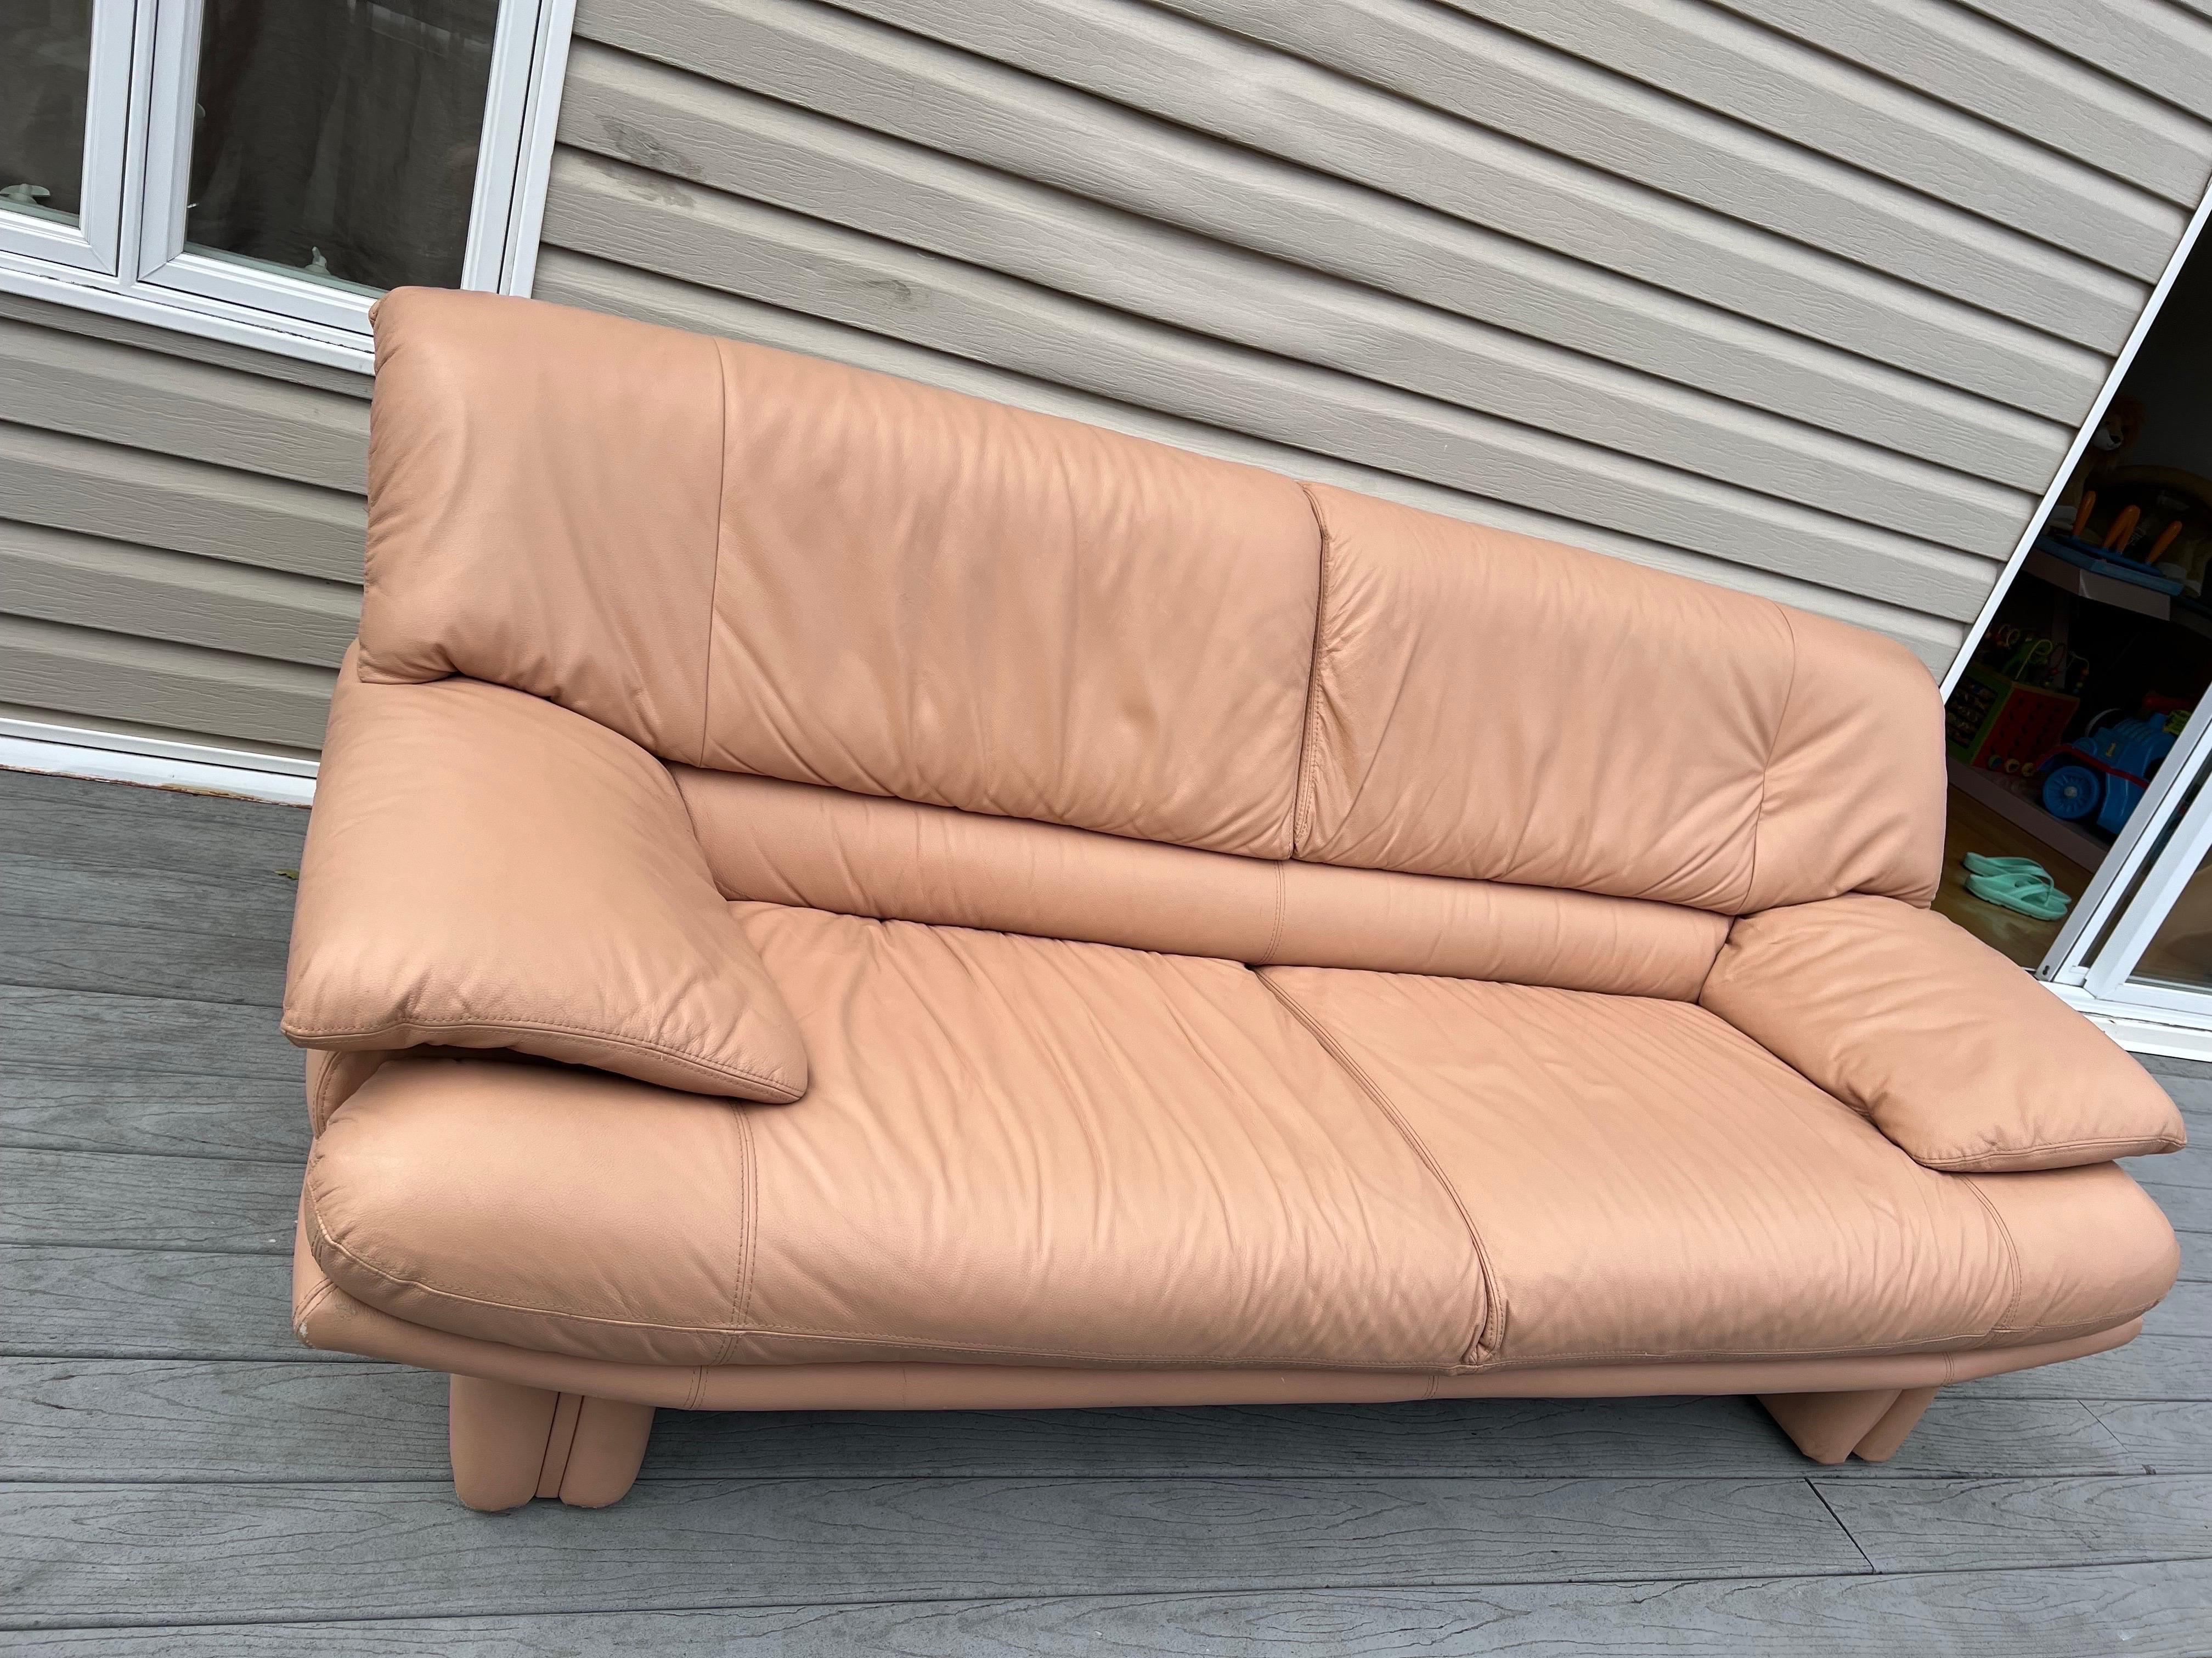 peach leather sofa